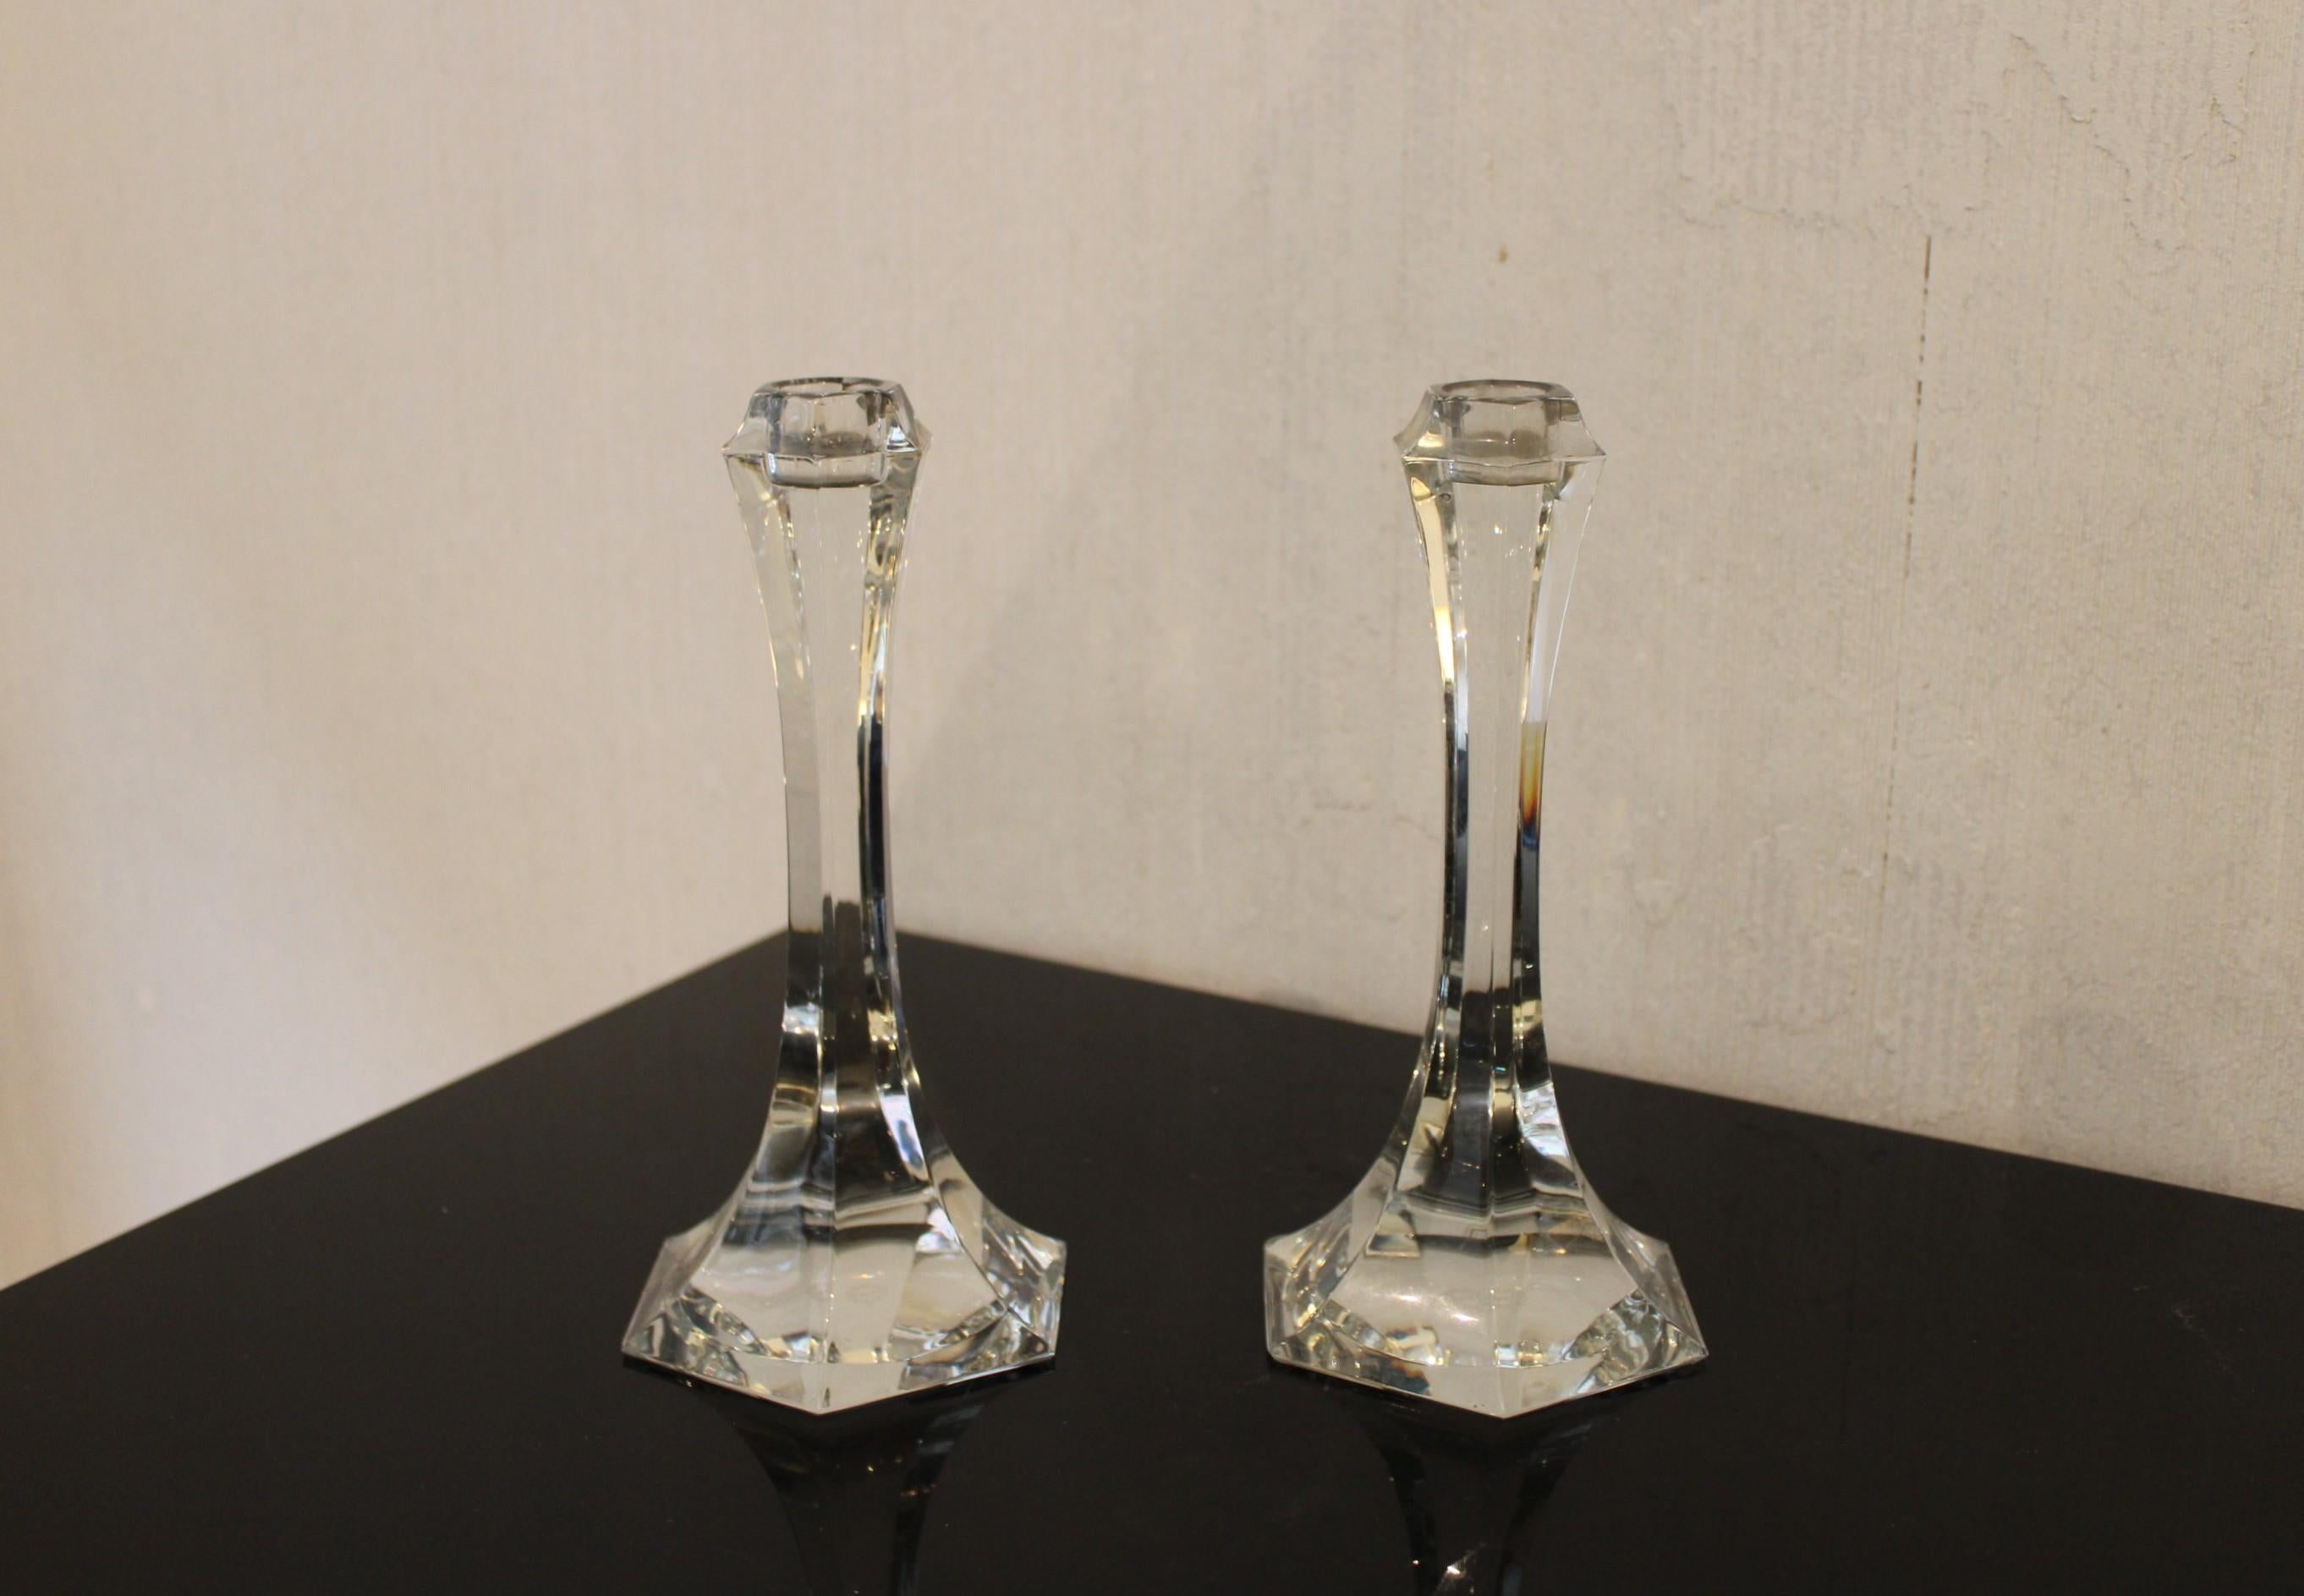 Paire de chandeliers en cristal, modèle Vega
Mark Saint Louis
France, 20ème siècle.